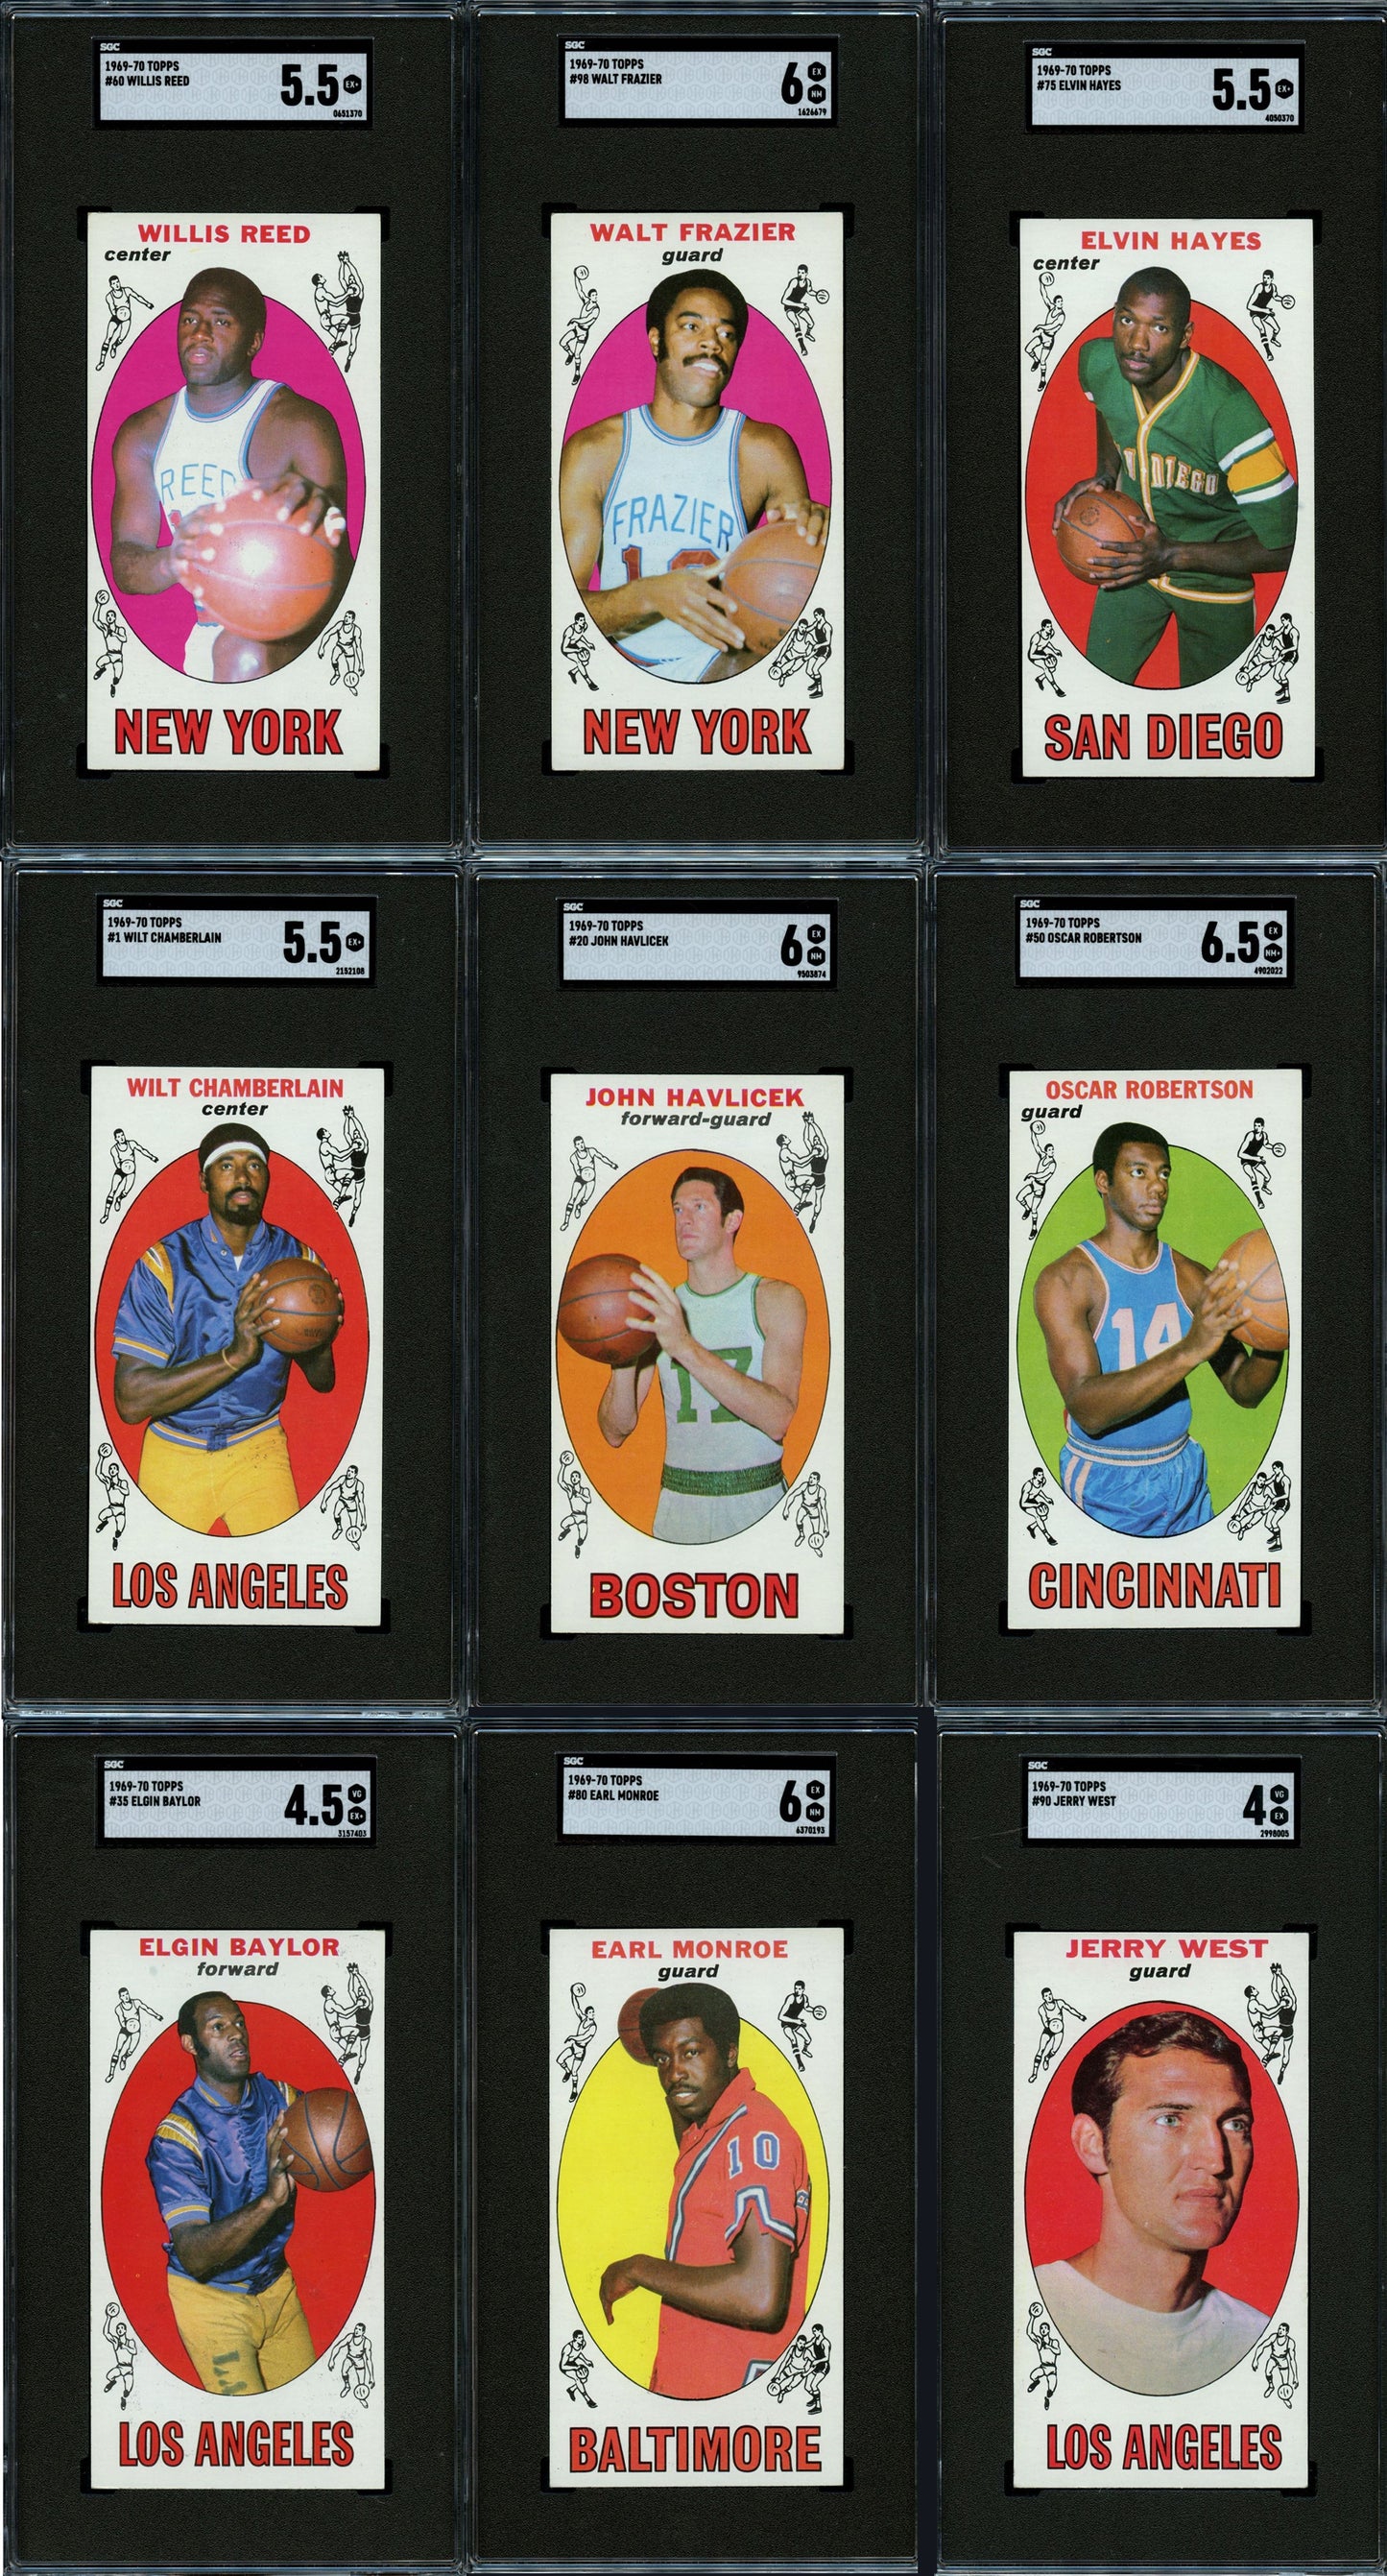 1969 Topps Basketball Set Break 99 Spot Random Card (Kareem Abdul-Jabbar Rookie SGC 5, John Havlicek Rookie SGC 6, Wilt Chamberlain SGC 5.5, etc!)